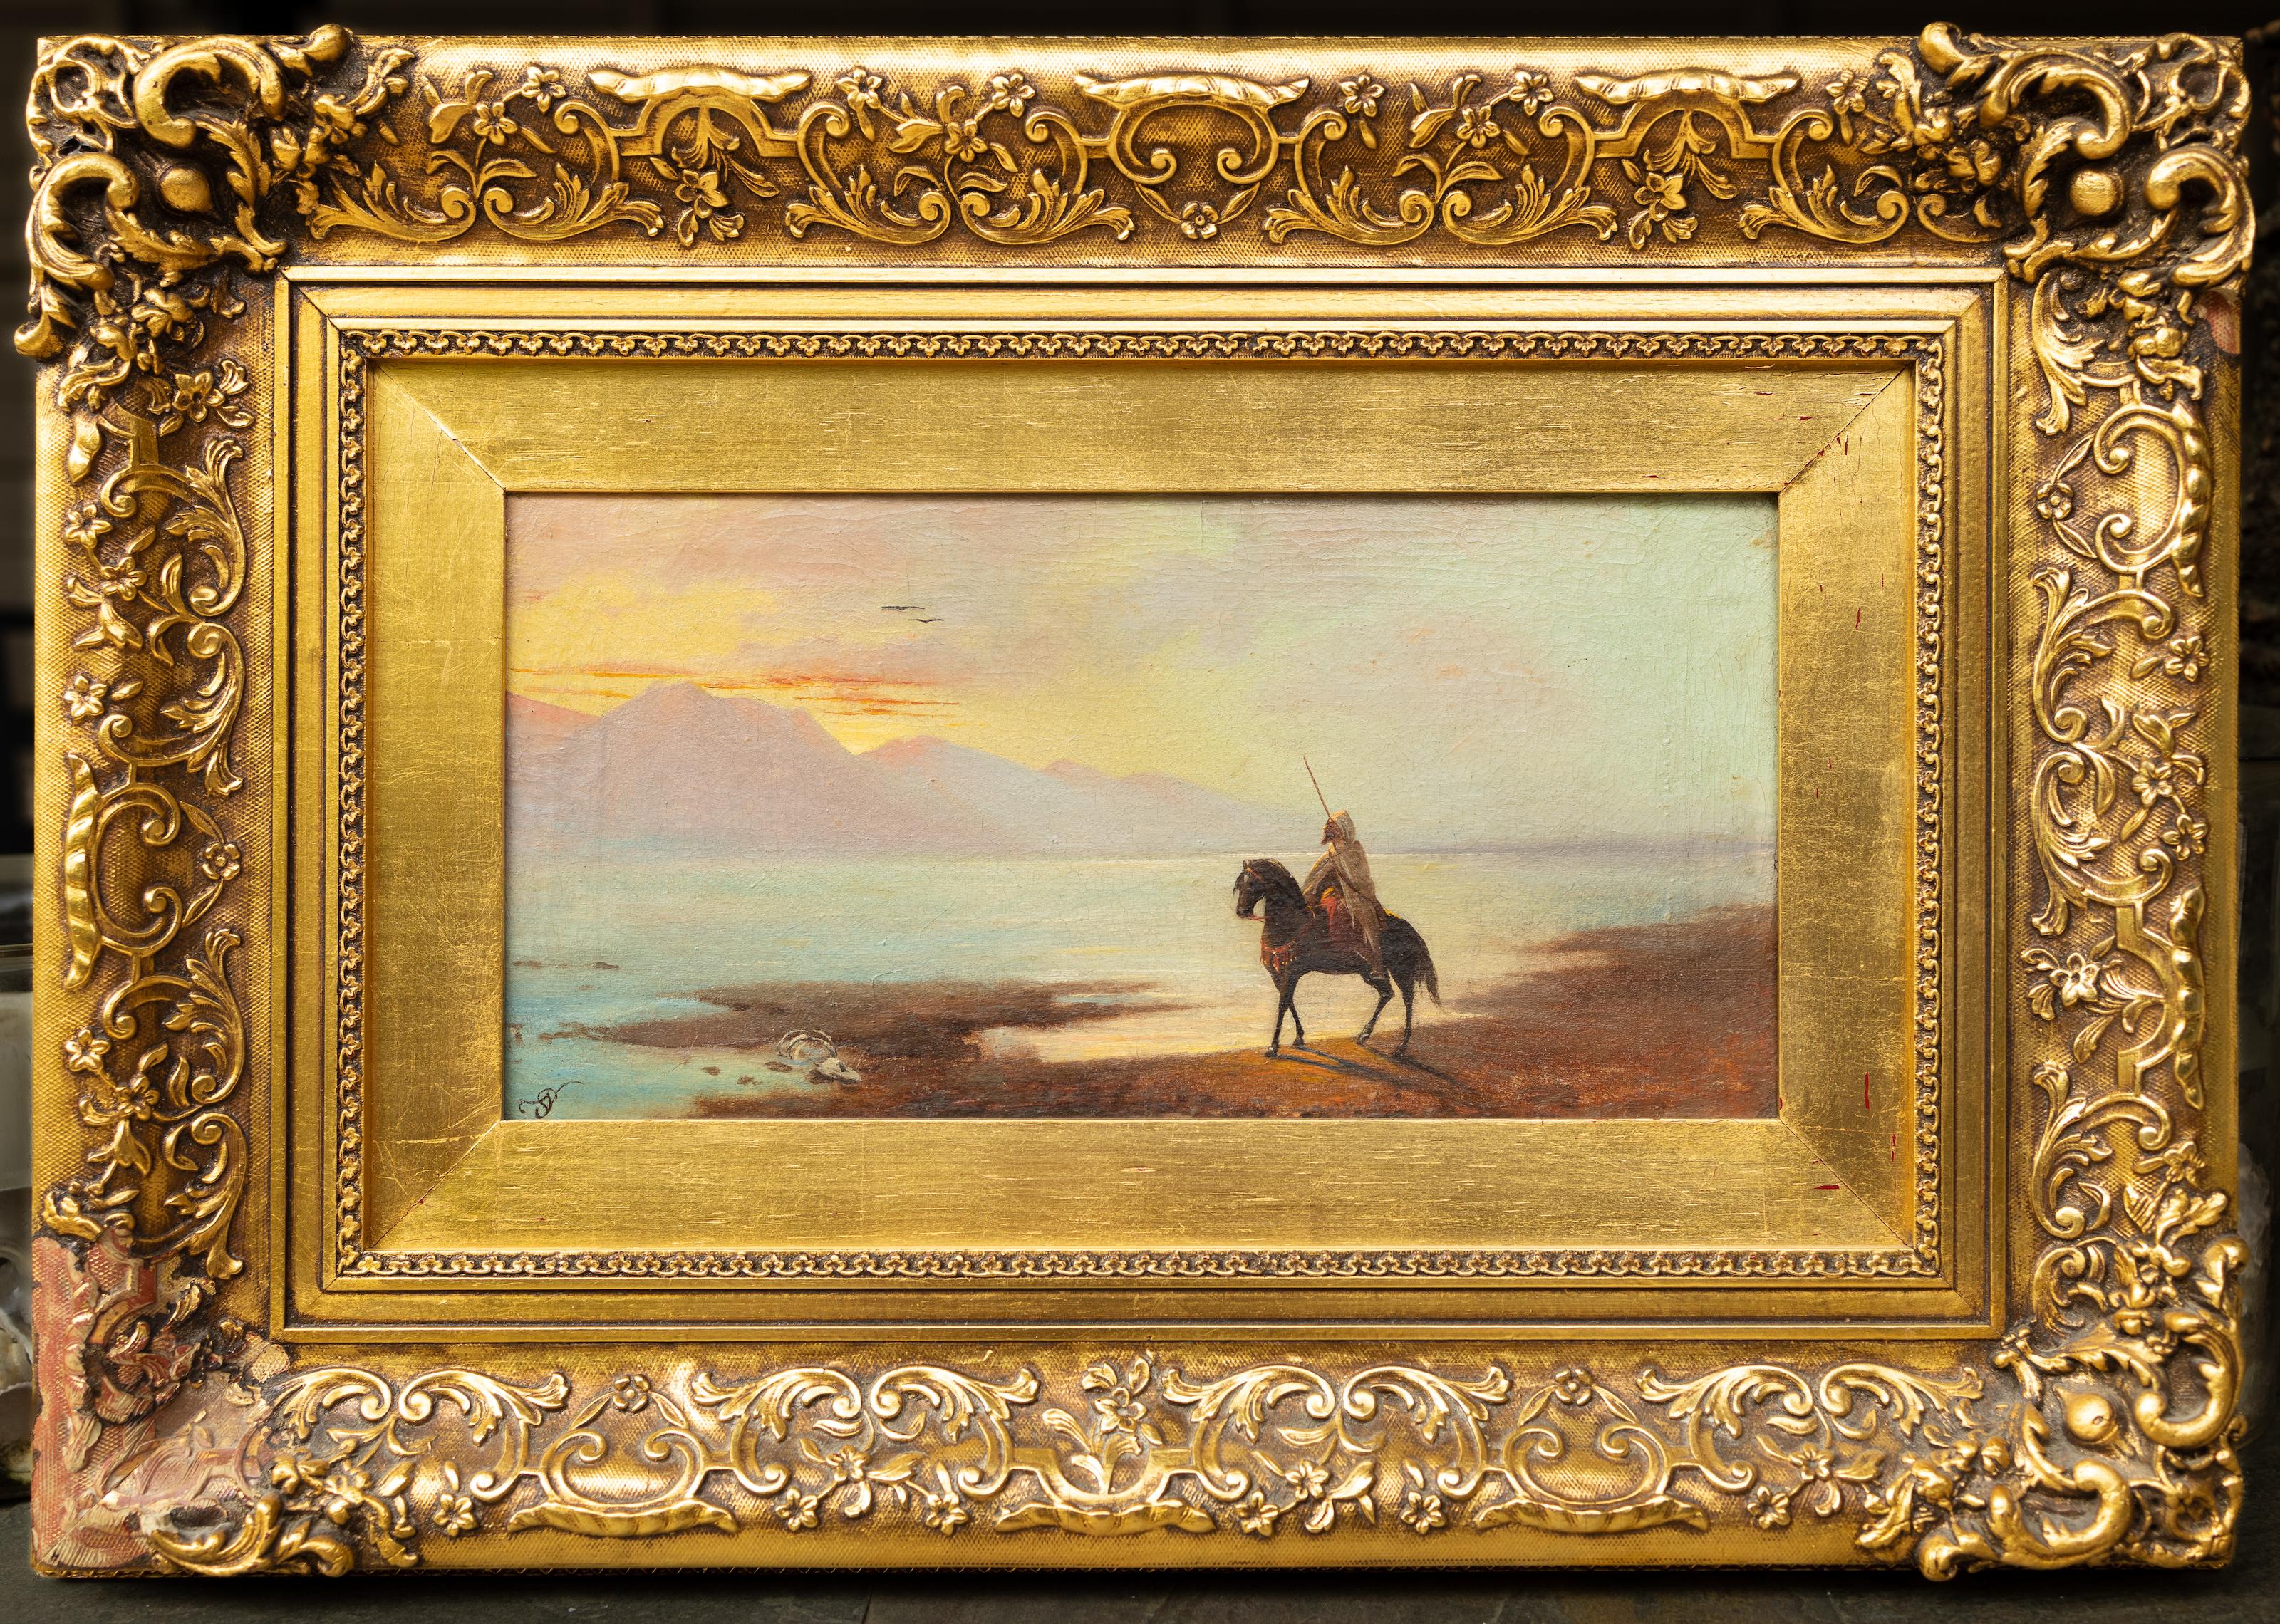 Arabian Rider at Dusk - Painting by Adolf Schreyer